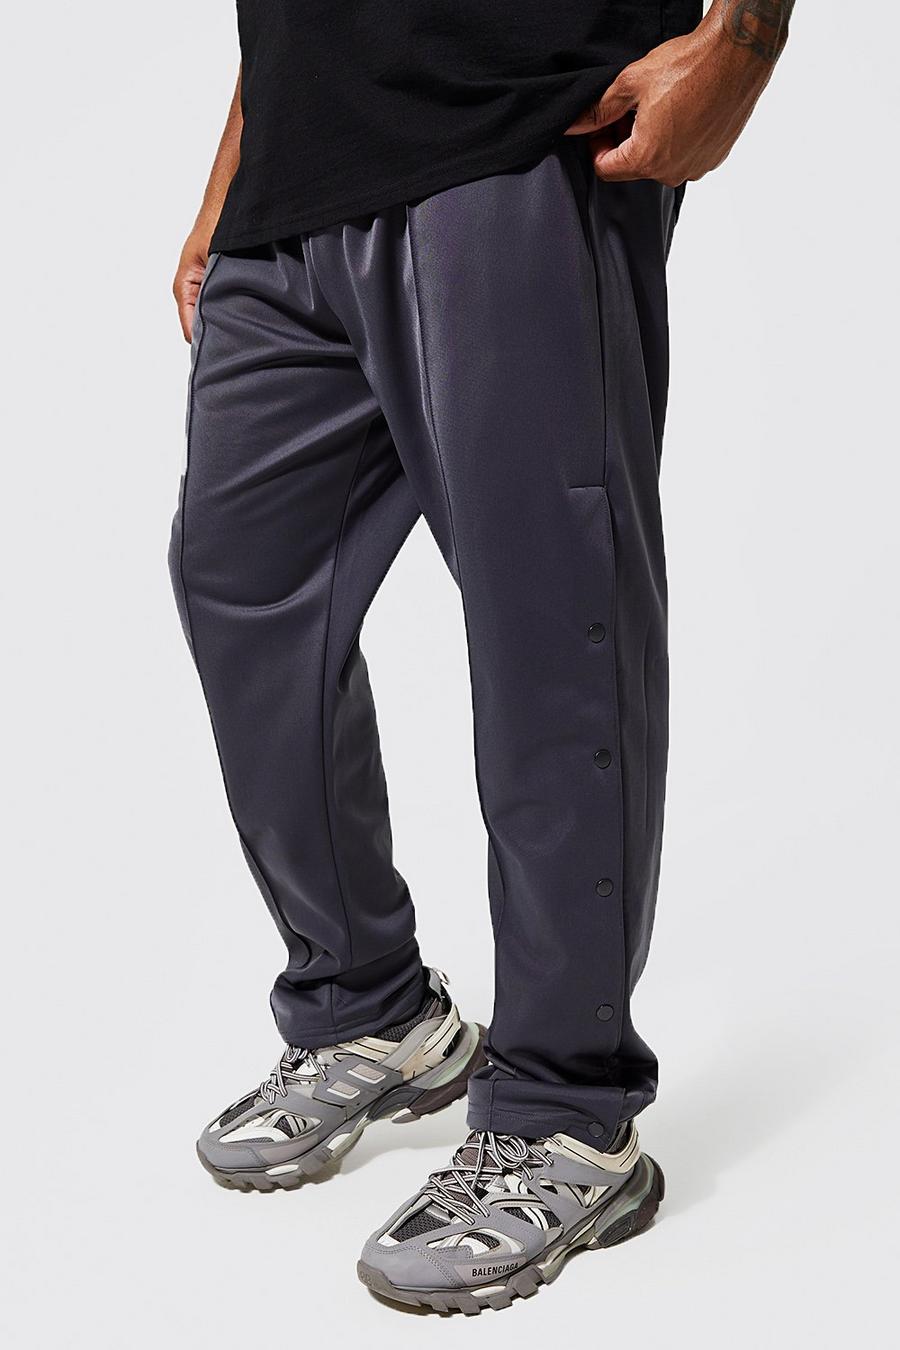 Pantalón deportivo Plus Regular de tejido por urdimbre con botones de presión, Charcoal grigio